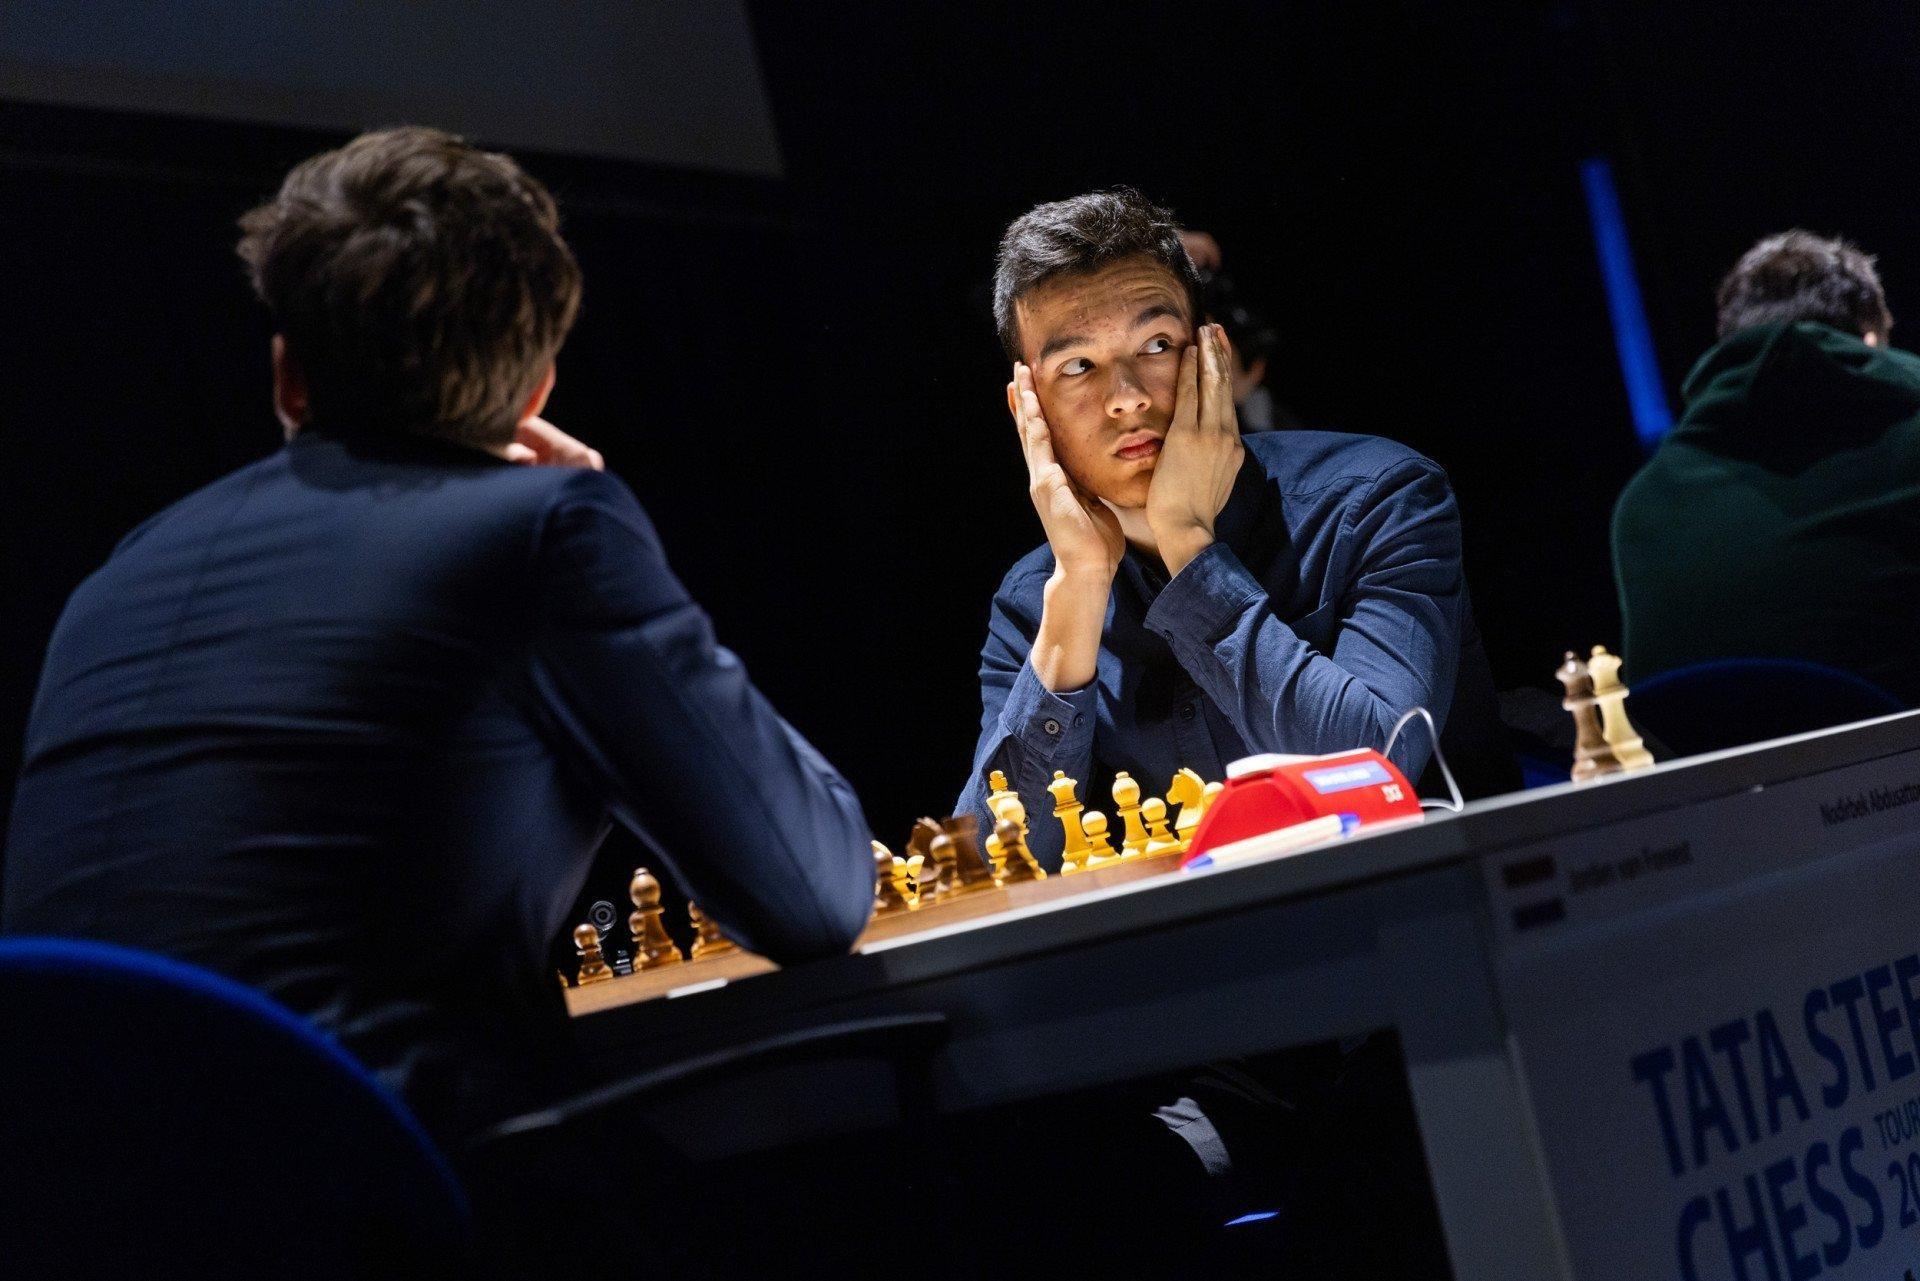 Nodirbek Abdusattarov defeated a Dutch chess player in a six-hour match